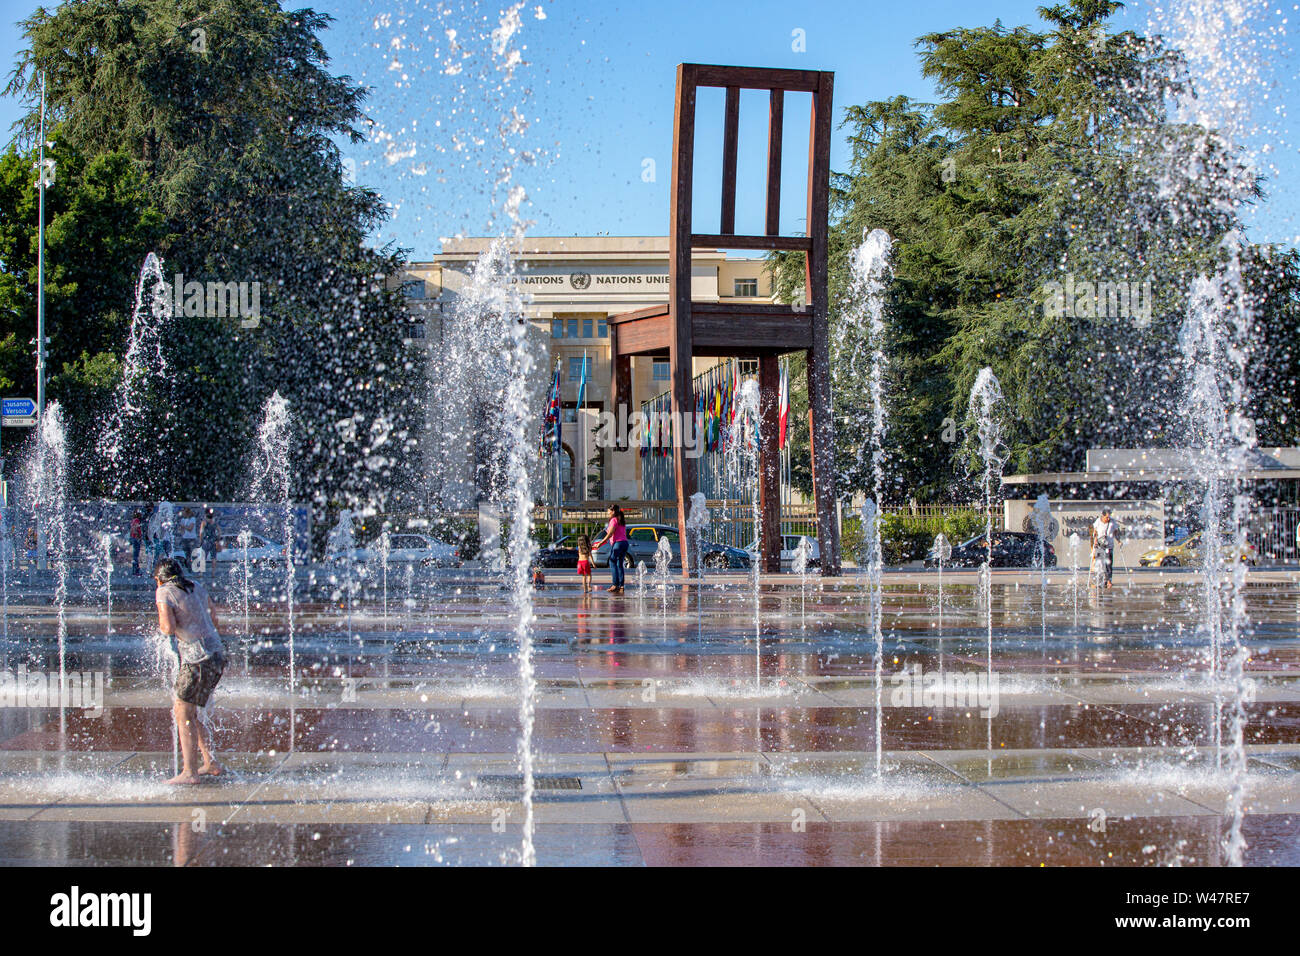 Kinder spielen im Wasser Brunnen auf der Place des Nations in Genf an einem  heißen Sommertag. Genf. Schweiz Stockfotografie - Alamy